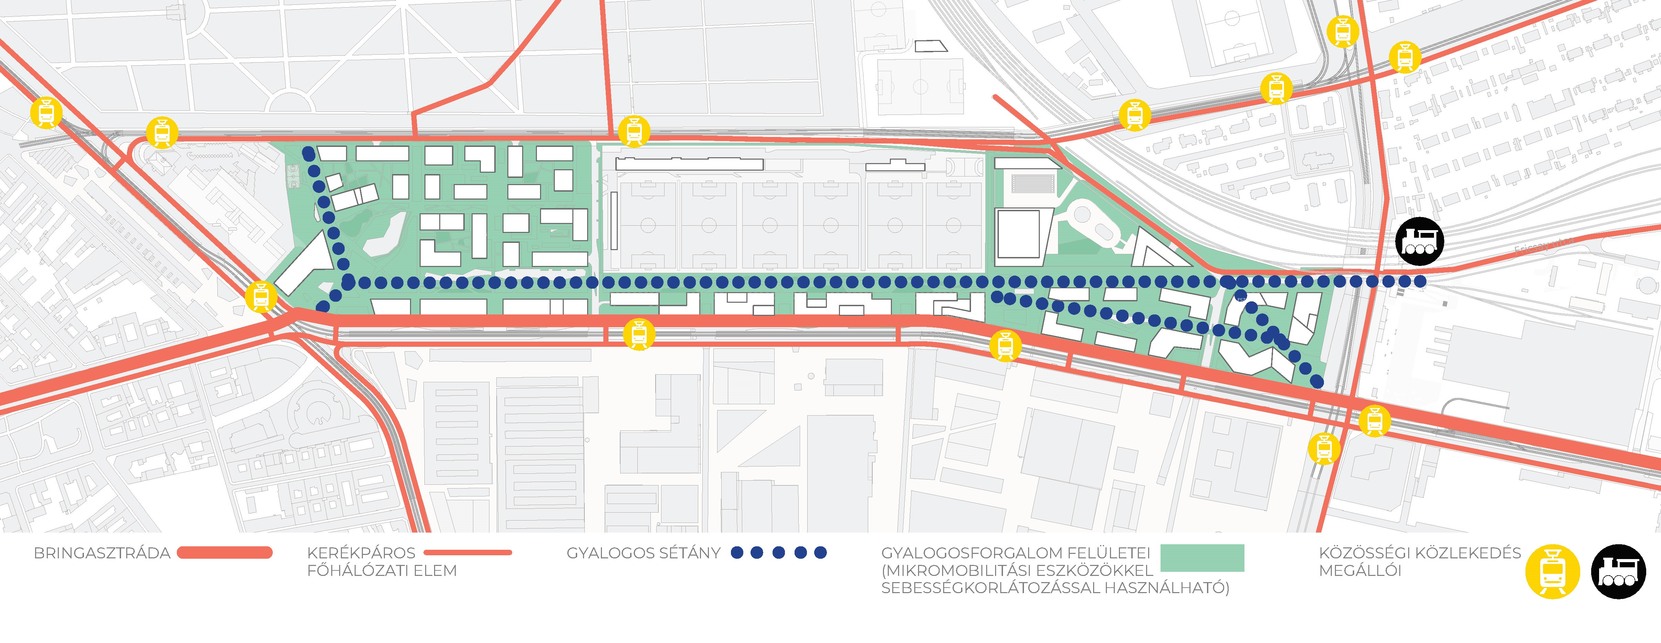 A gyalogos-kerékpáros sétány nyomvonala az Orczy tértől a tervezett Közlekedési Múzeum vasúti megállóhelyig. Piros vonallal jelölve a tervezett kerékpáros útvonalak a terület körül
